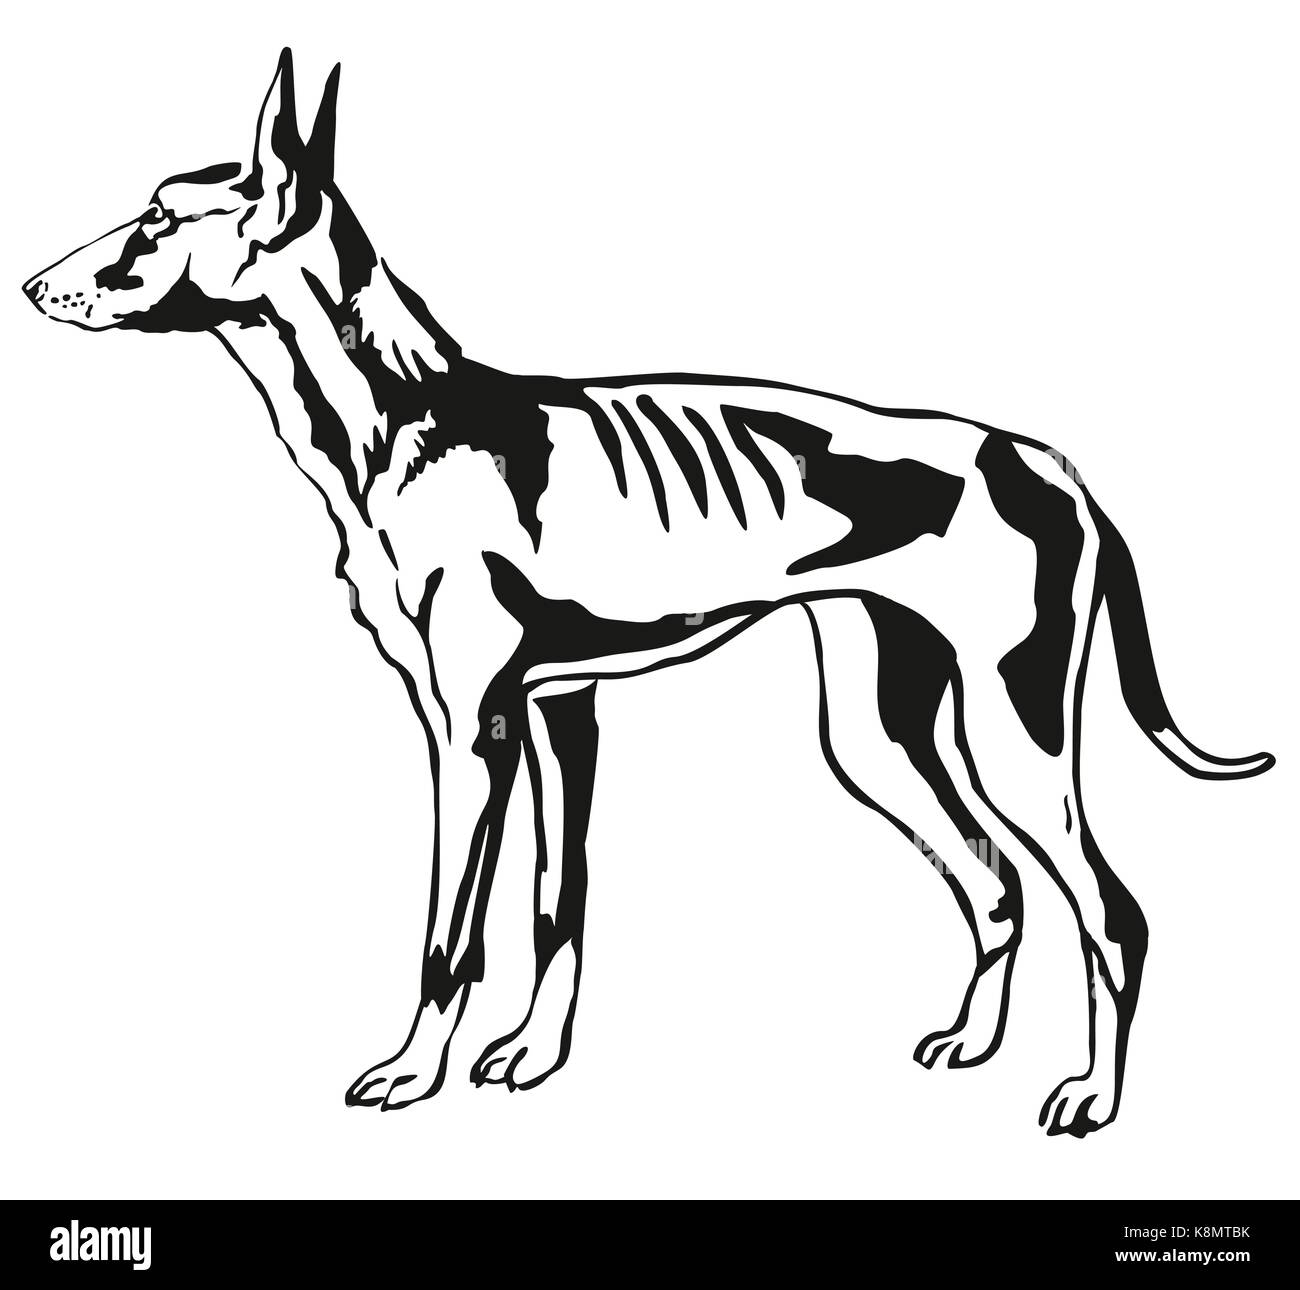 Contour décoratif portrait de profil debout dans ibiza podenco ibicenco (hound dog), vector illustration isolé en couleur noir sur blanc backgroun Illustration de Vecteur